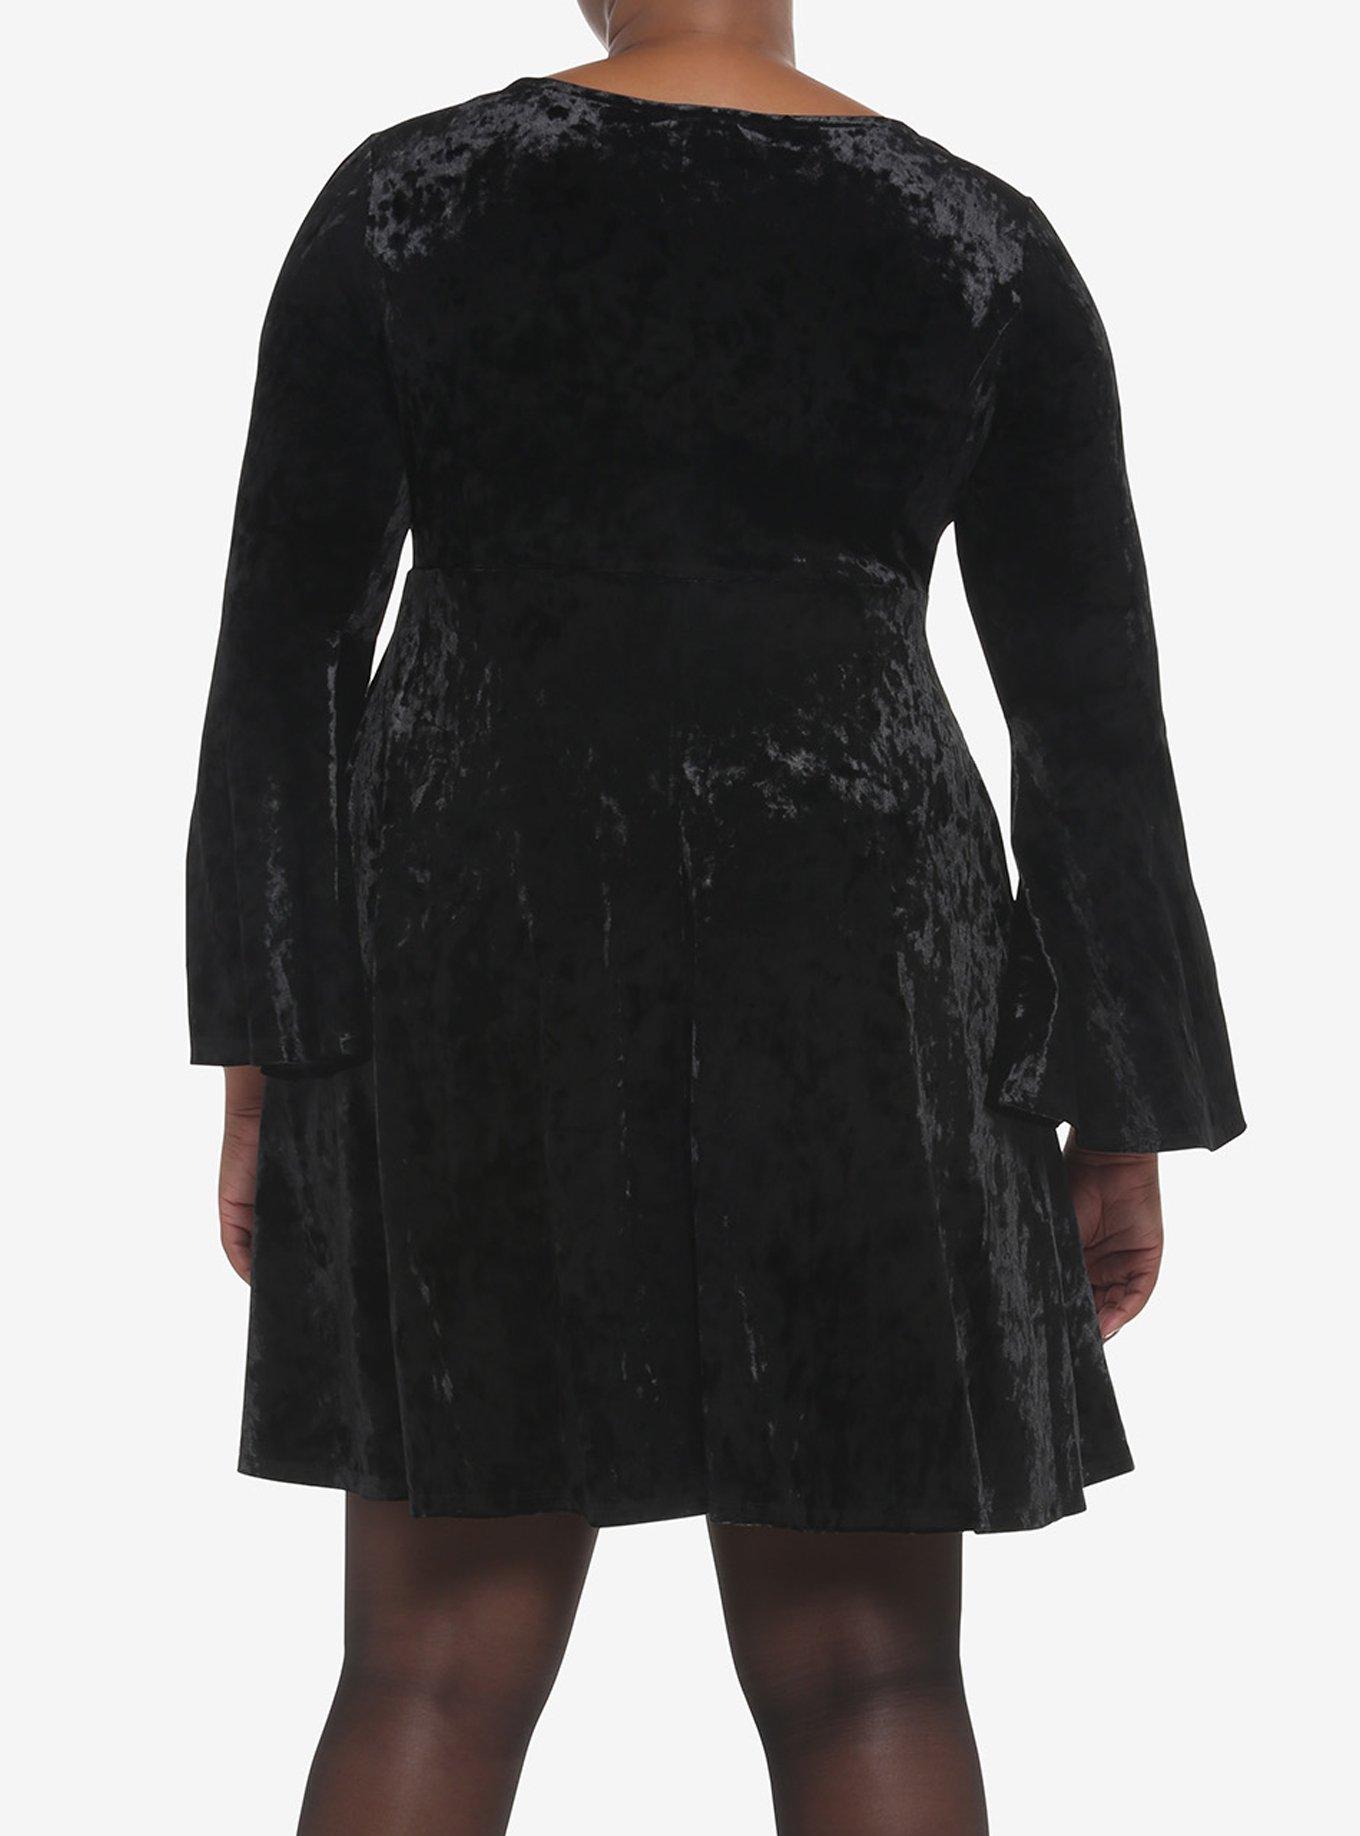 Black Crushed Velvet Bell-Sleeve Mini Dress Plus Size, BLACK, alternate